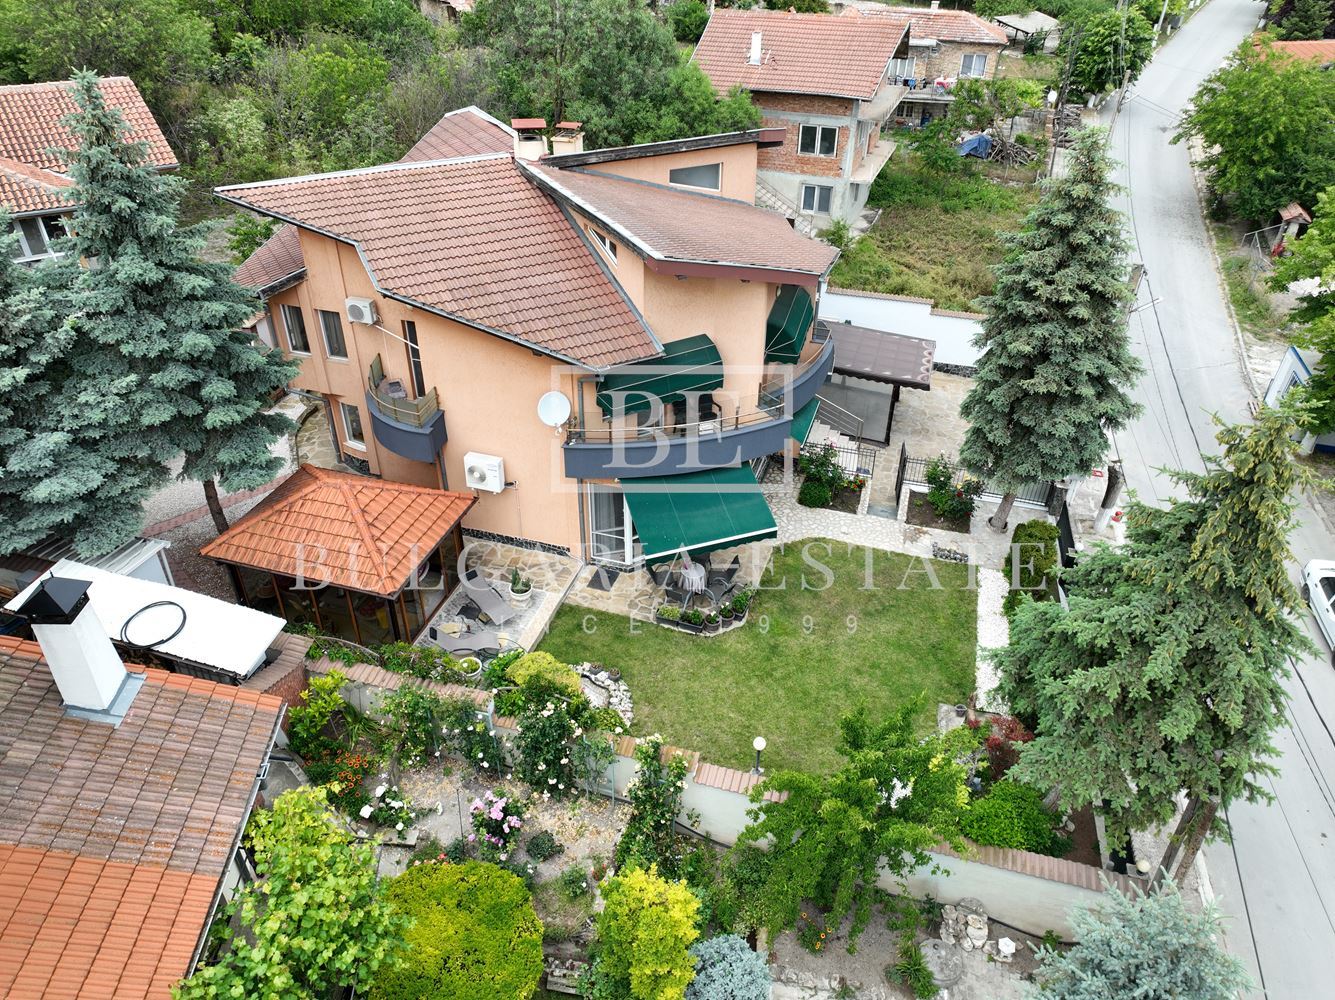 🏡🌿 Роскошный дом с двором в деревне Рогачево - всего в 10 минутах от пляжей Албены! 🌞🏖️ - 0